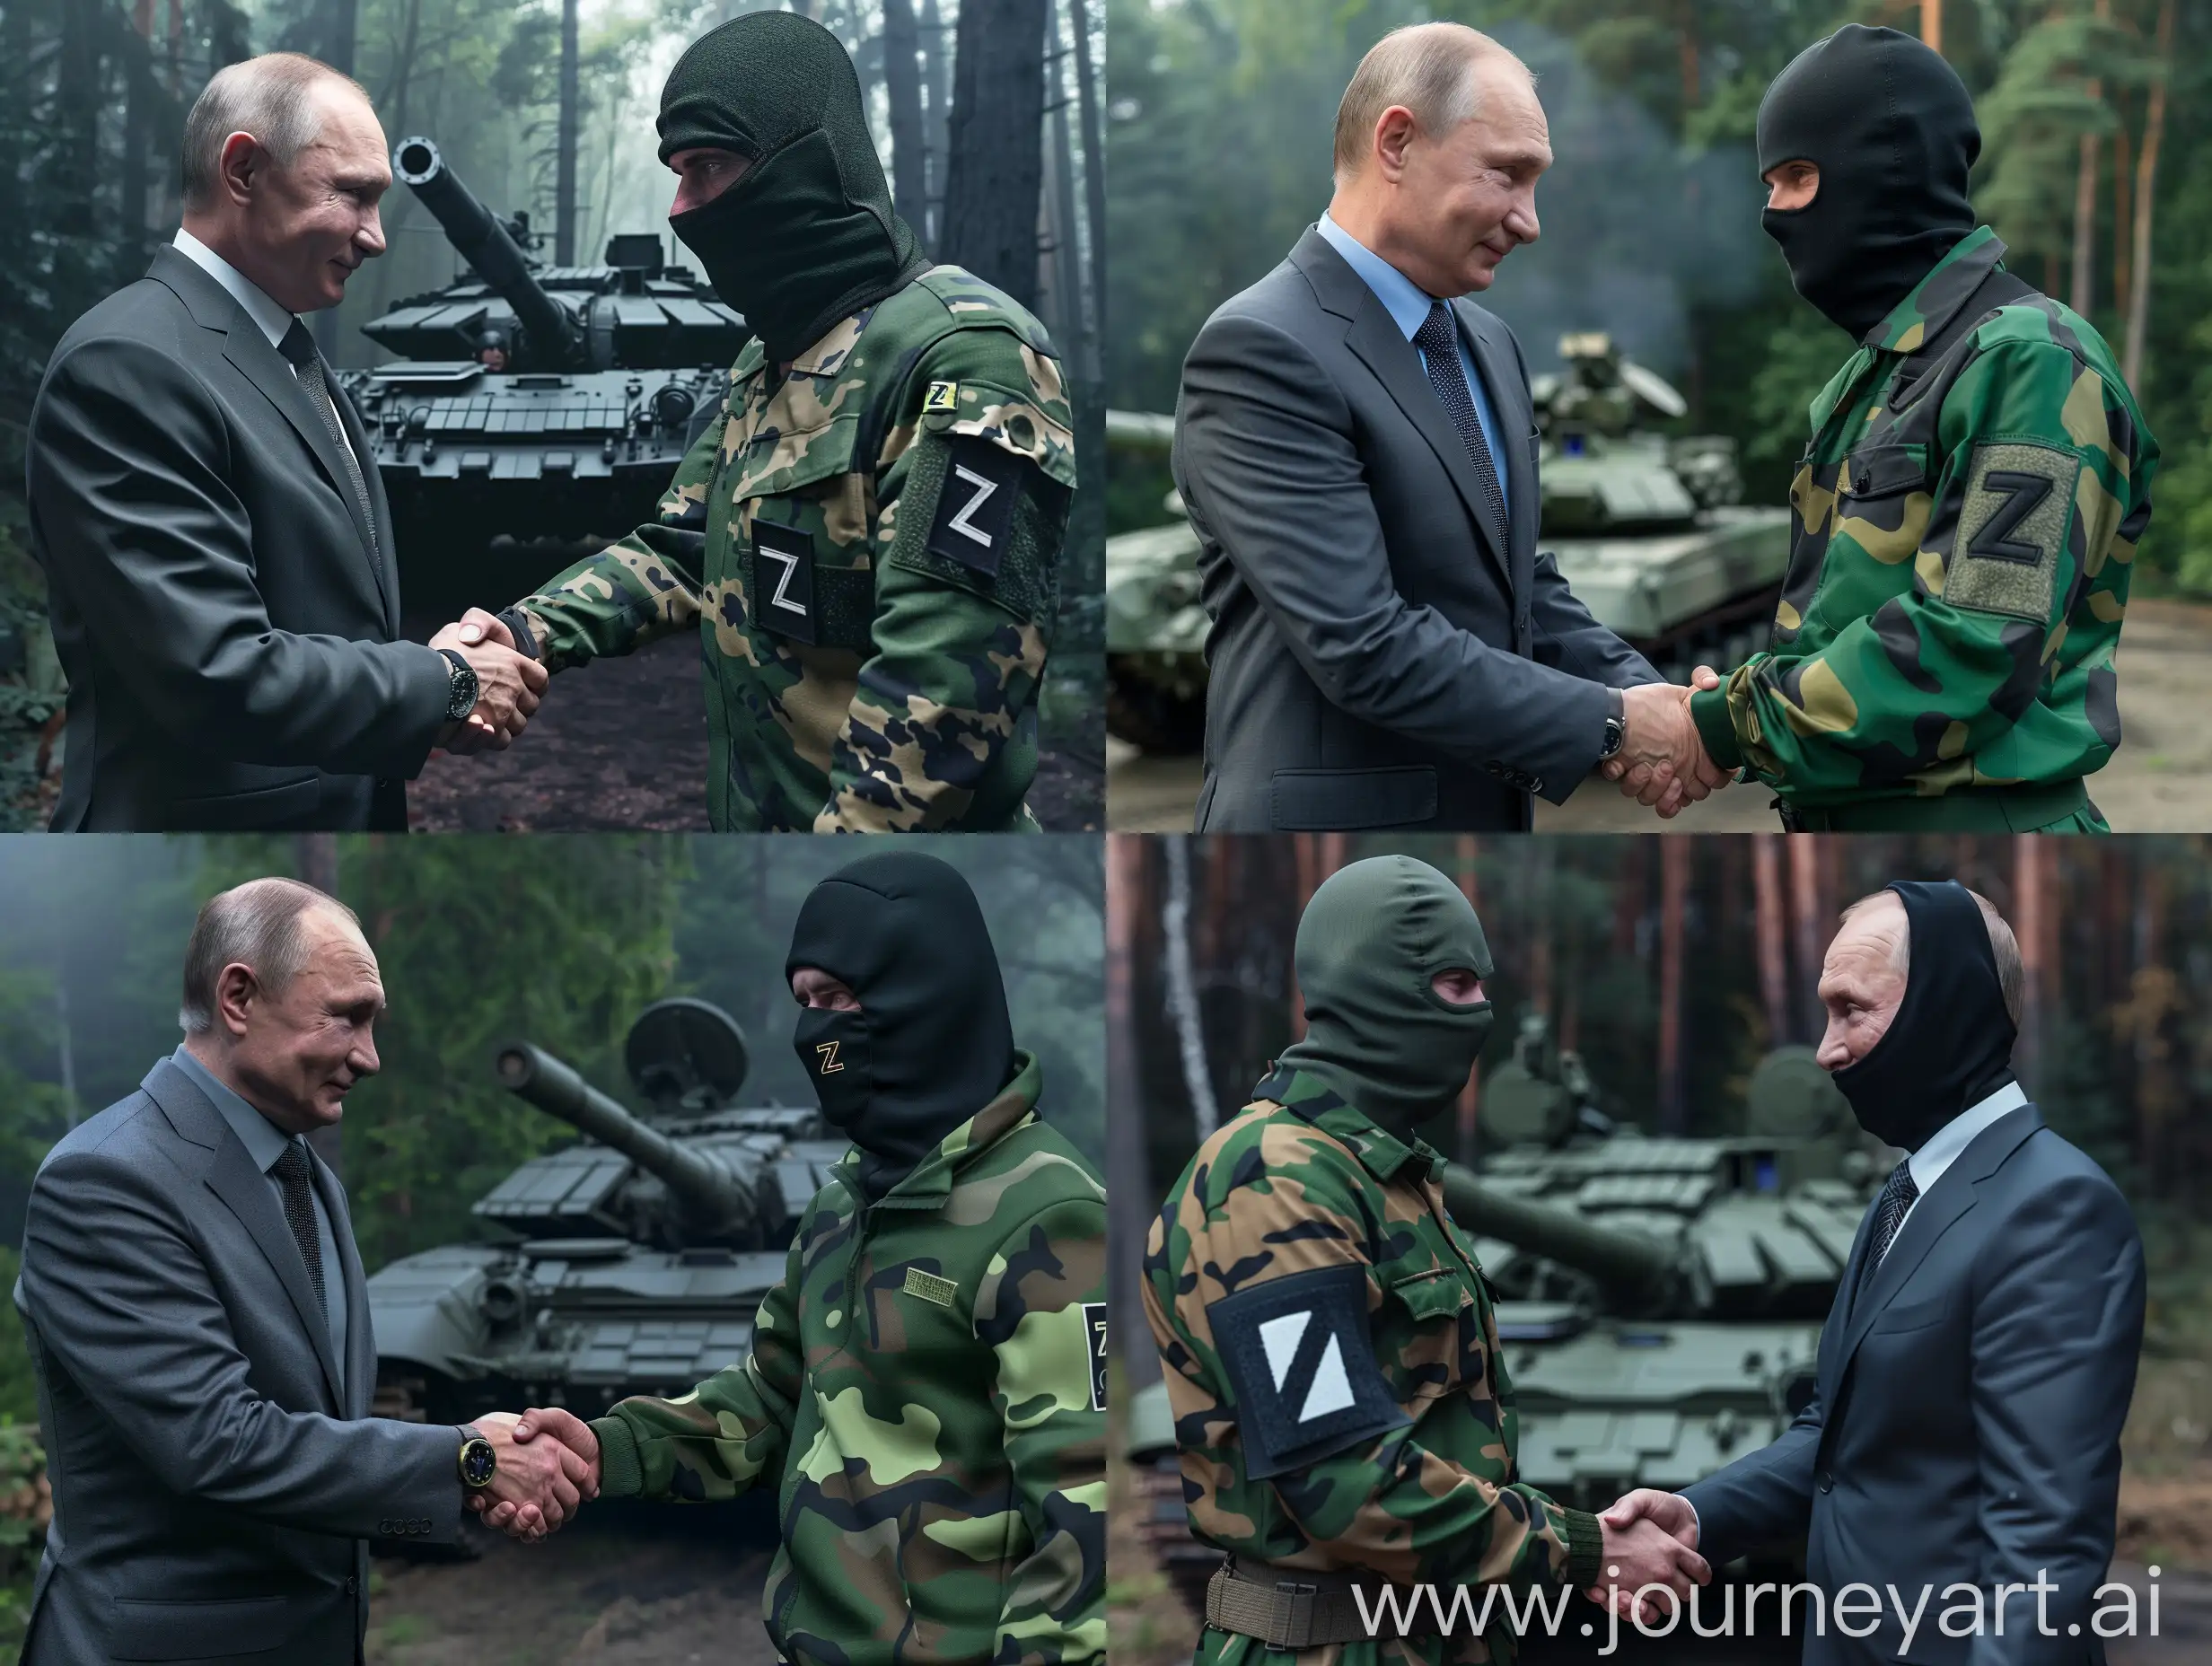 Владимир Путин в деловом костюме, жмёт руку мужчине в зеленой камуфляжной одежде, черная балаклава, нашивка Z, задний фон танк, лес, острый фокус, гипер реализм, супер детализация, 8к